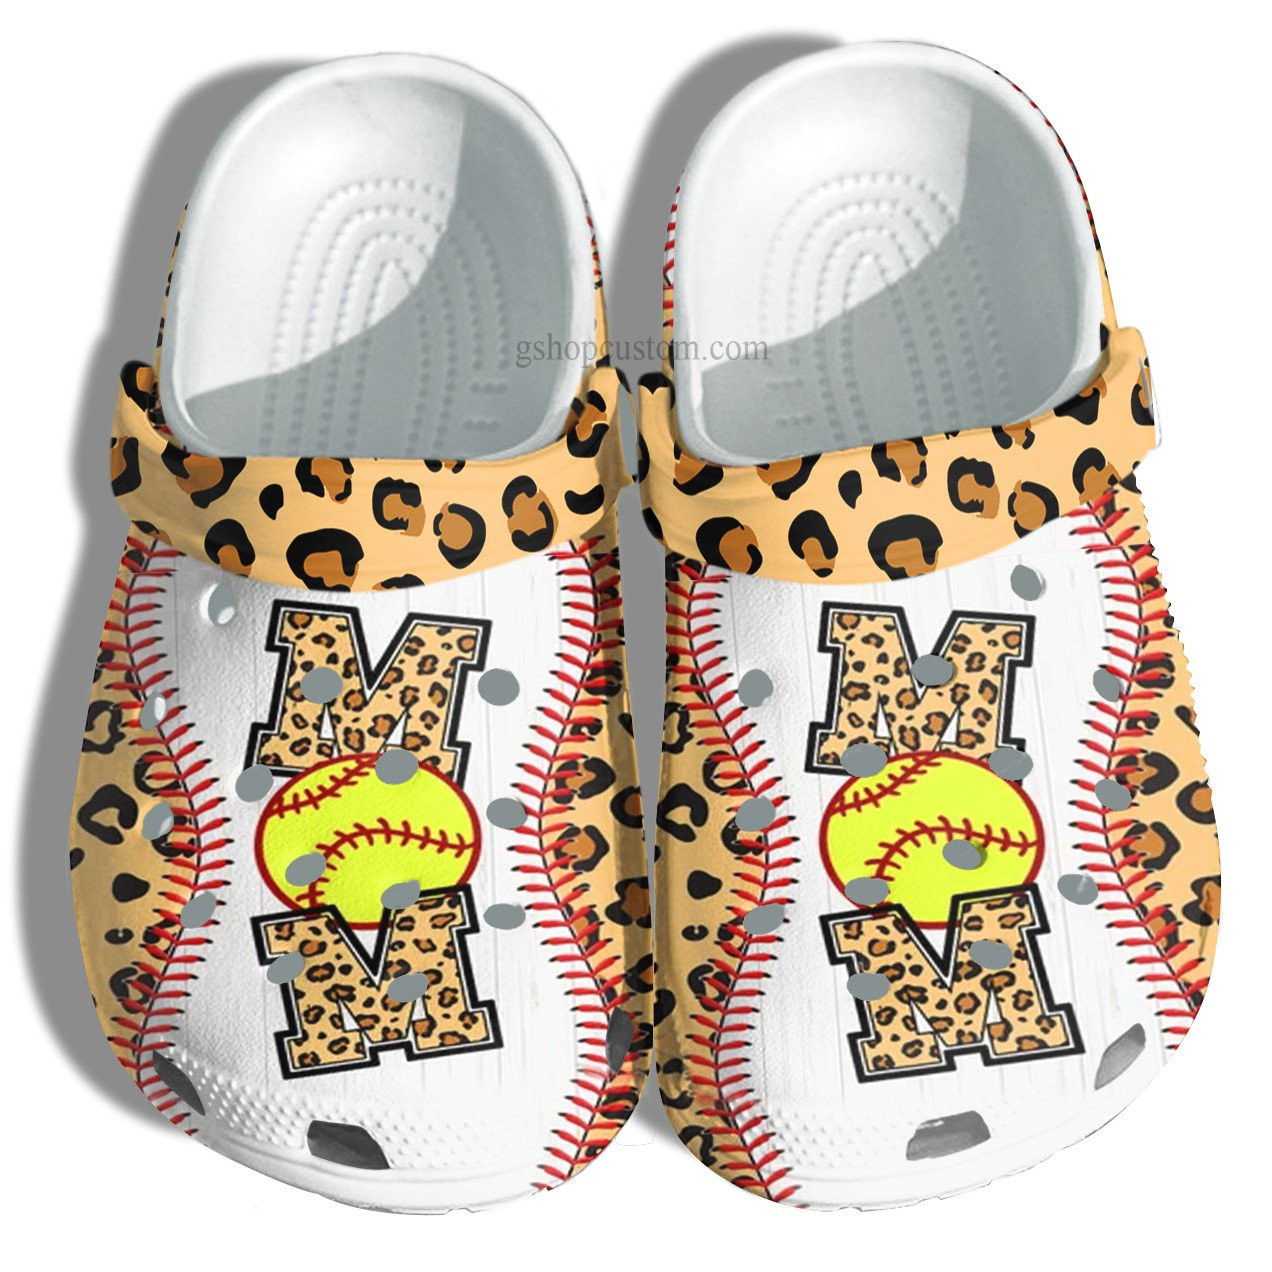 Baseball Mom Leopard Croc Crocs Clog Shoes Gift Mommy- Baseball Line Crocs Clog Shoes Gift Mother Day